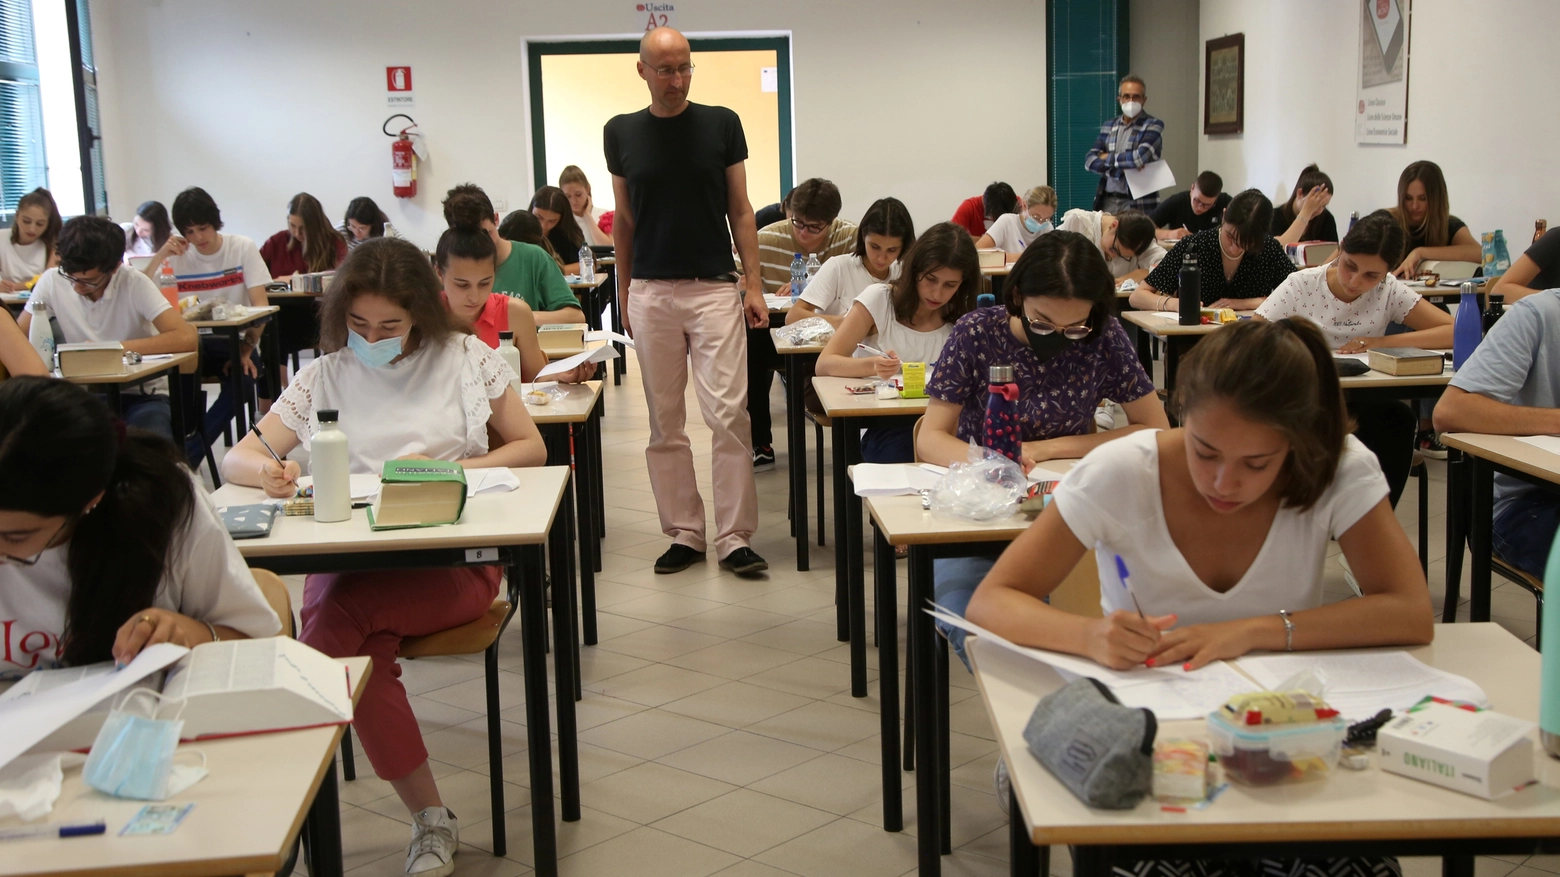 Scuola Emilia Romagna: come si svolgono gli esami di terza media e di maturità nelle zone alluvionate